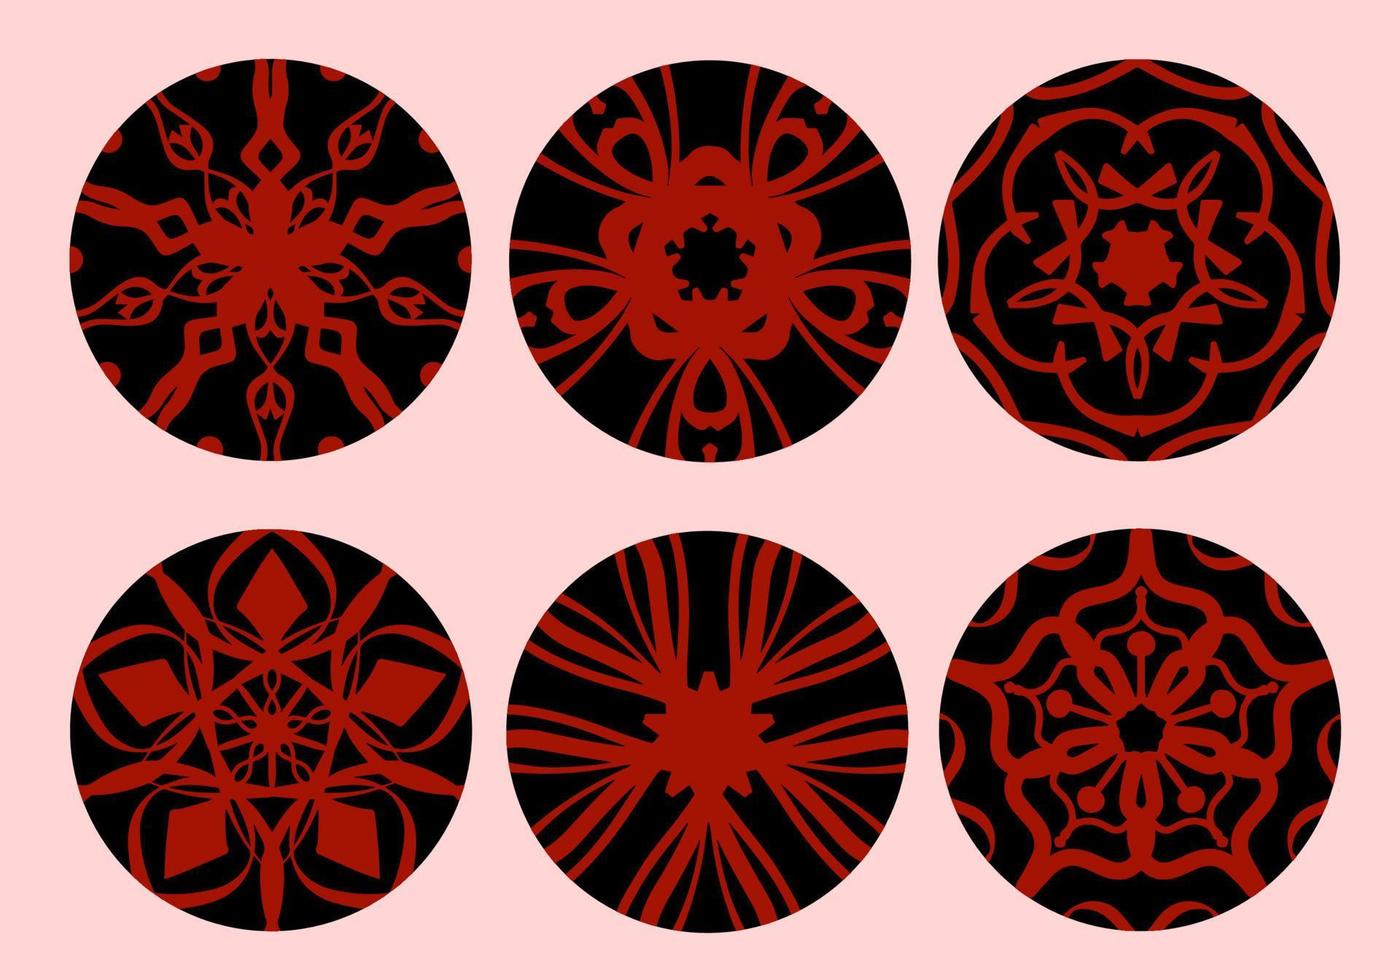 röd geometrisk och hand teckning ornament med stam- form i svart cirkel. designad i ikat, boho, aztek, folk, motiv, zigenare, och arabicum stil. element för din design. vektor illustration.